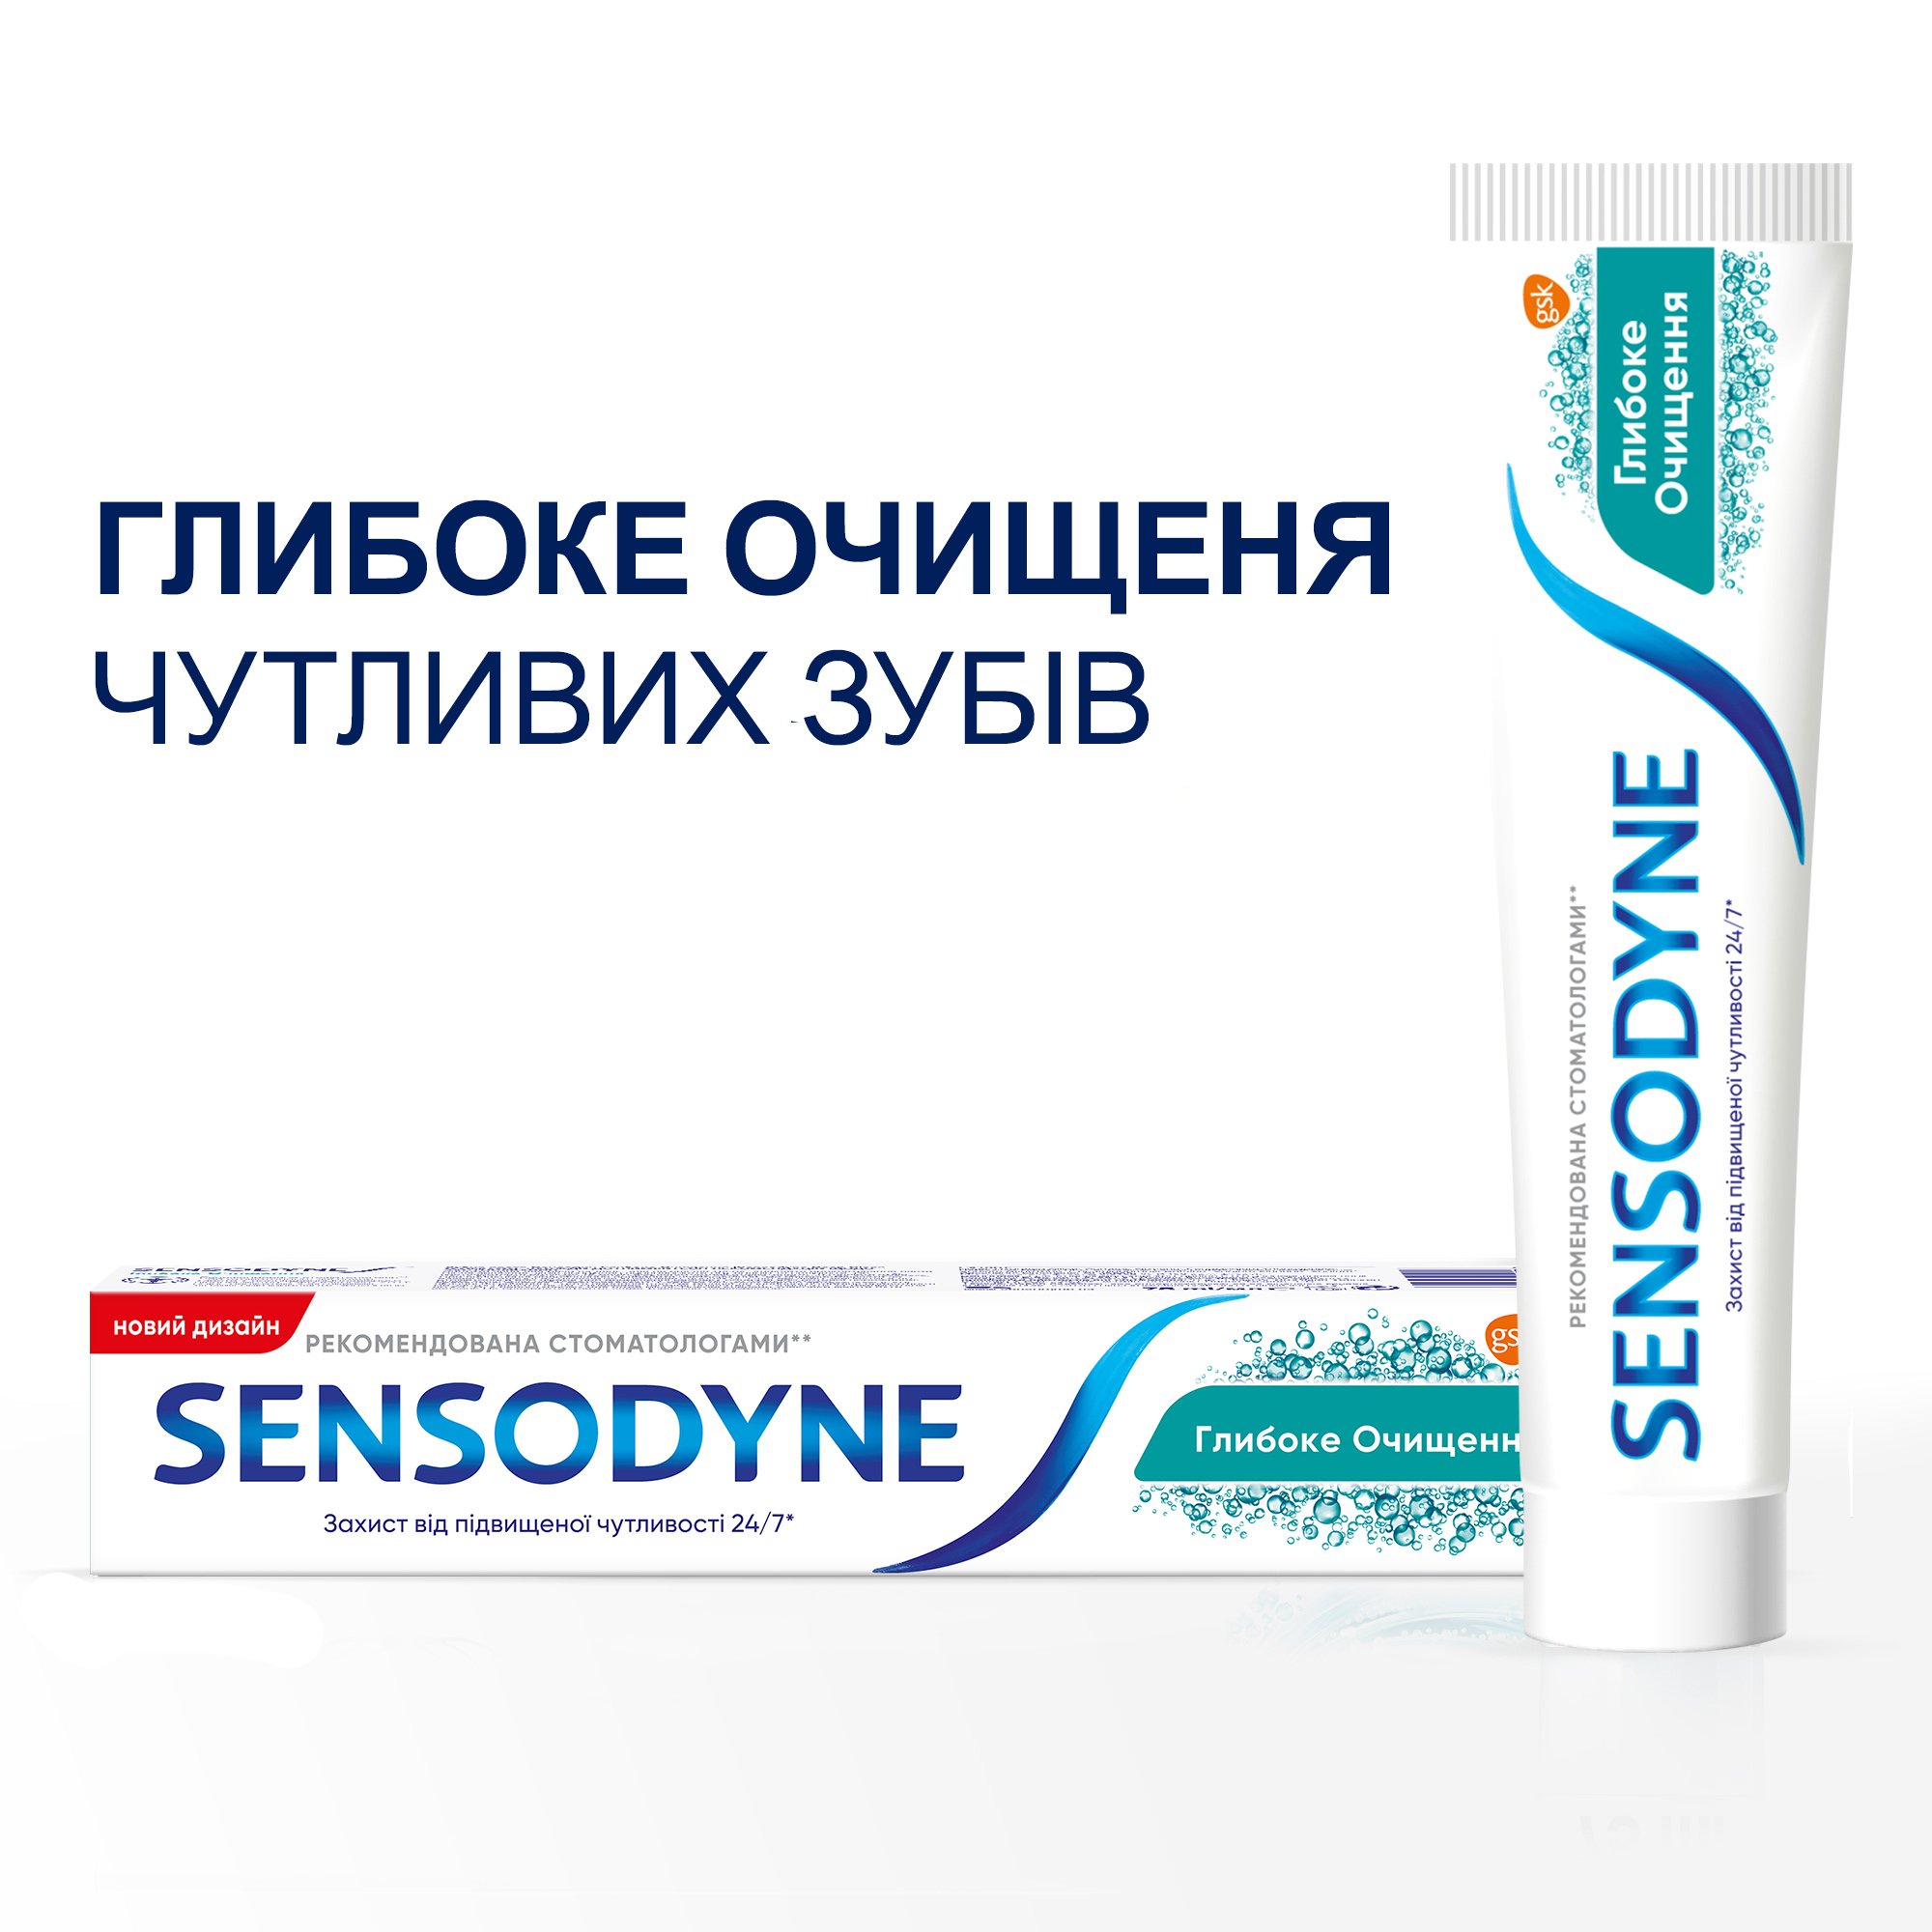 Зубная паста Sensodyne Глубокое Очищение, 75 мл - фото 3